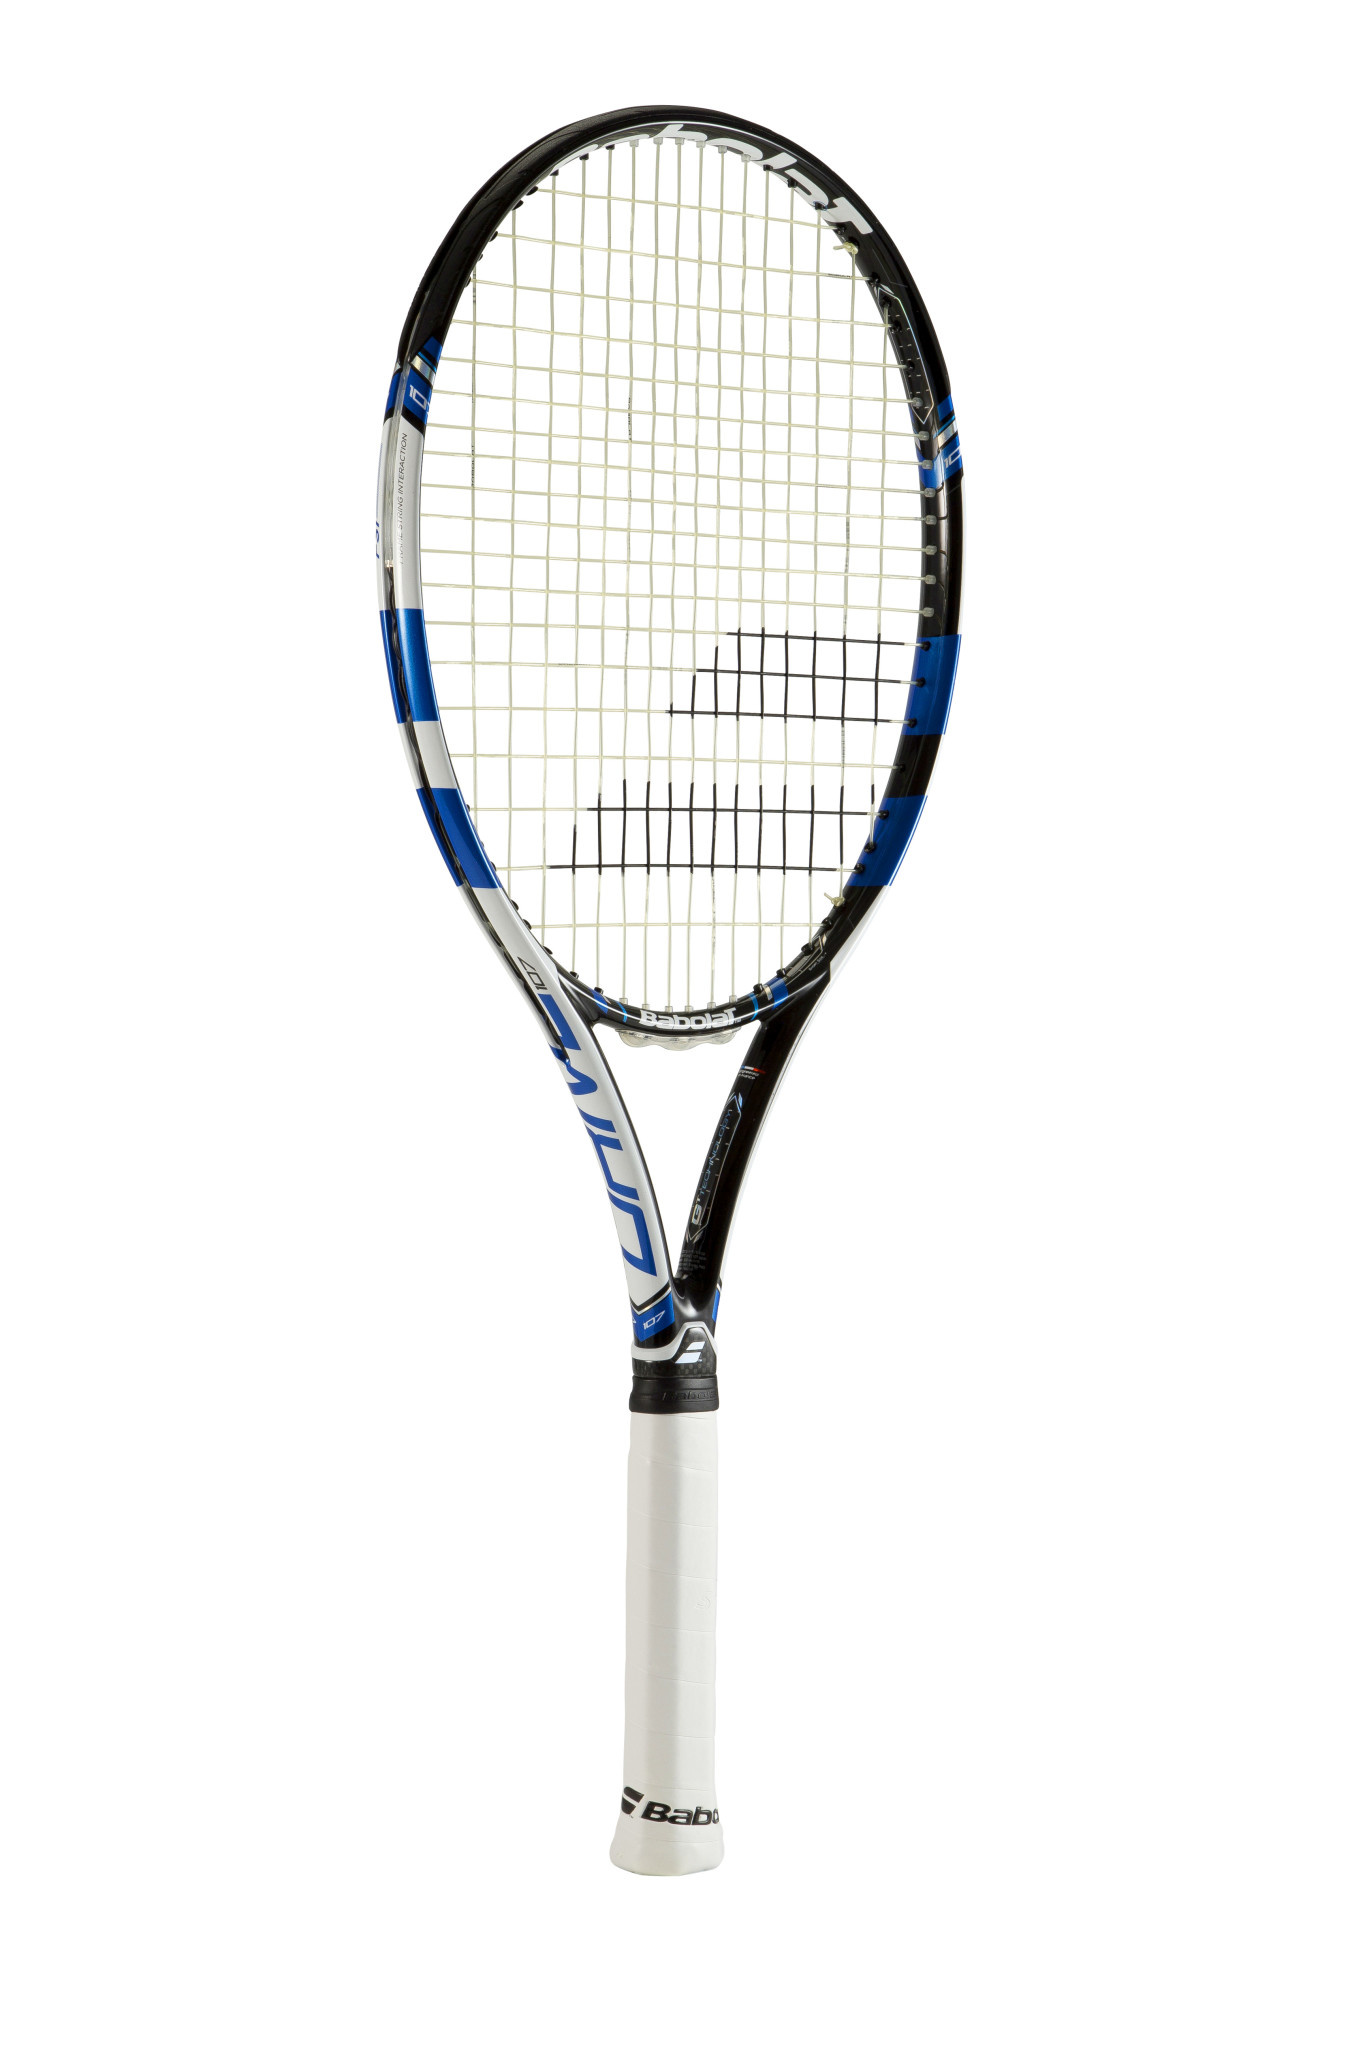 テニスラケット バボラ ピュア ドライブ チーム 2015年モデル (G1